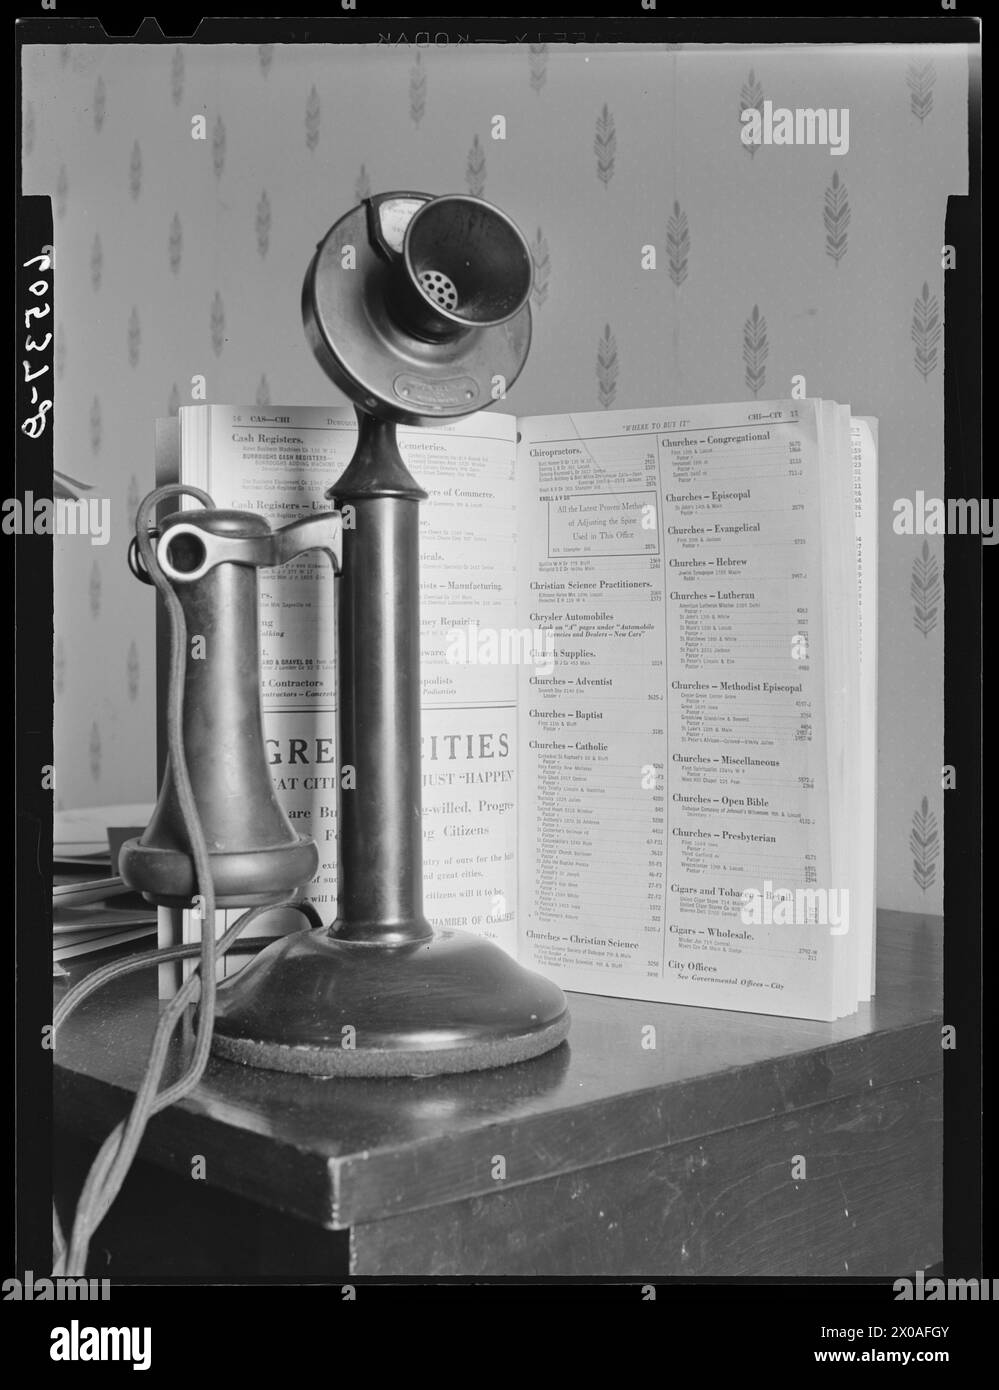 Telefono vecchio stile con elenco telefonico stampato su supporto in legno, Dubuque, Iowa, aprile 1940. (Foto di John Vachon/Office of War Information) Foto Stock